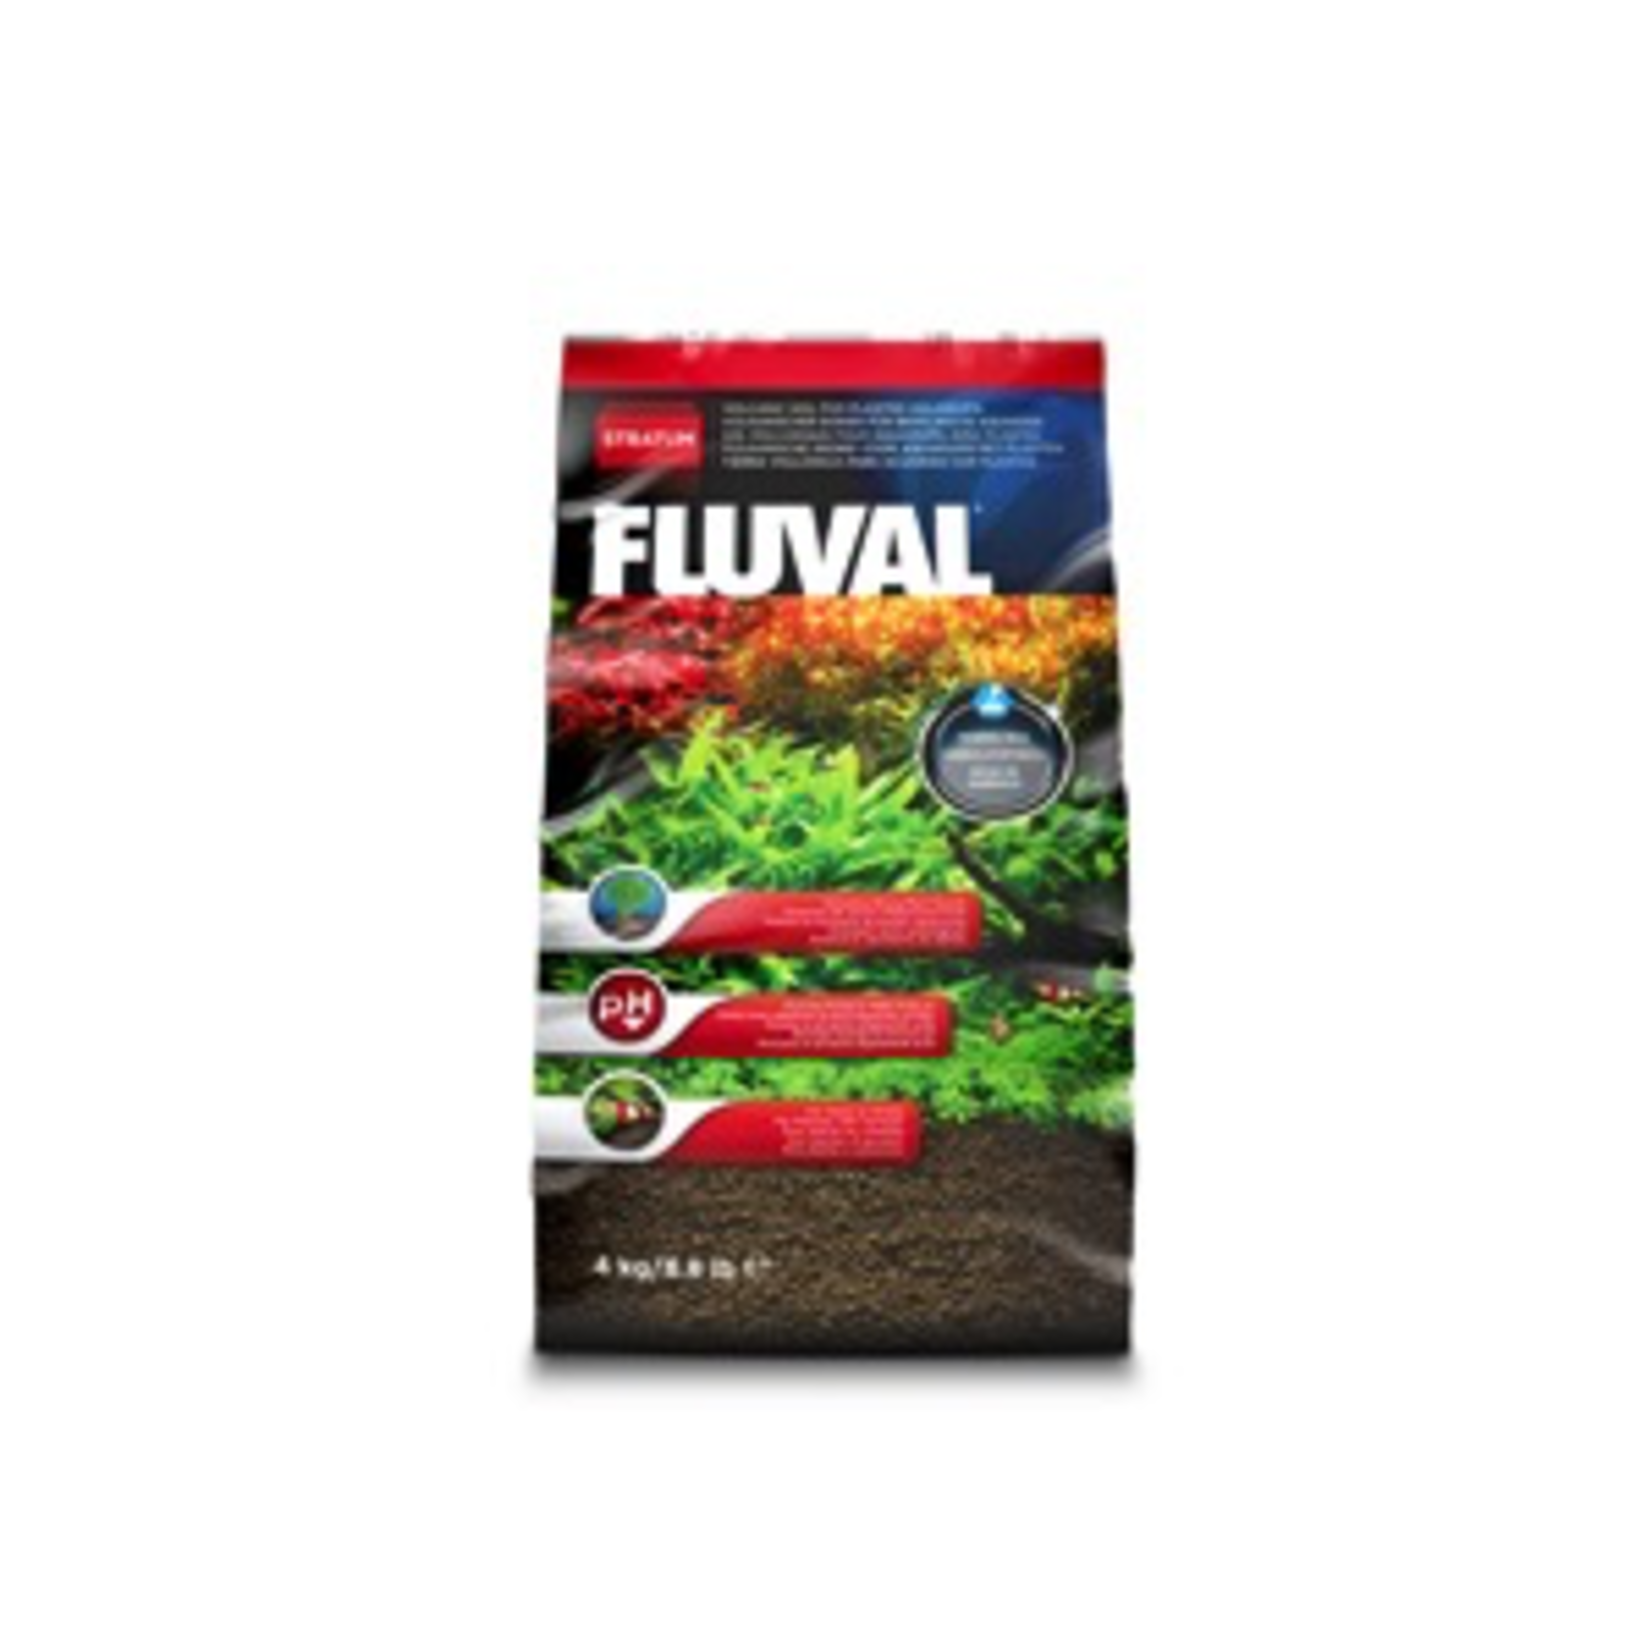 FLUVAL (W) Fluval Plant and Shrimp Stratum - 4 Kg / 8.8 lb